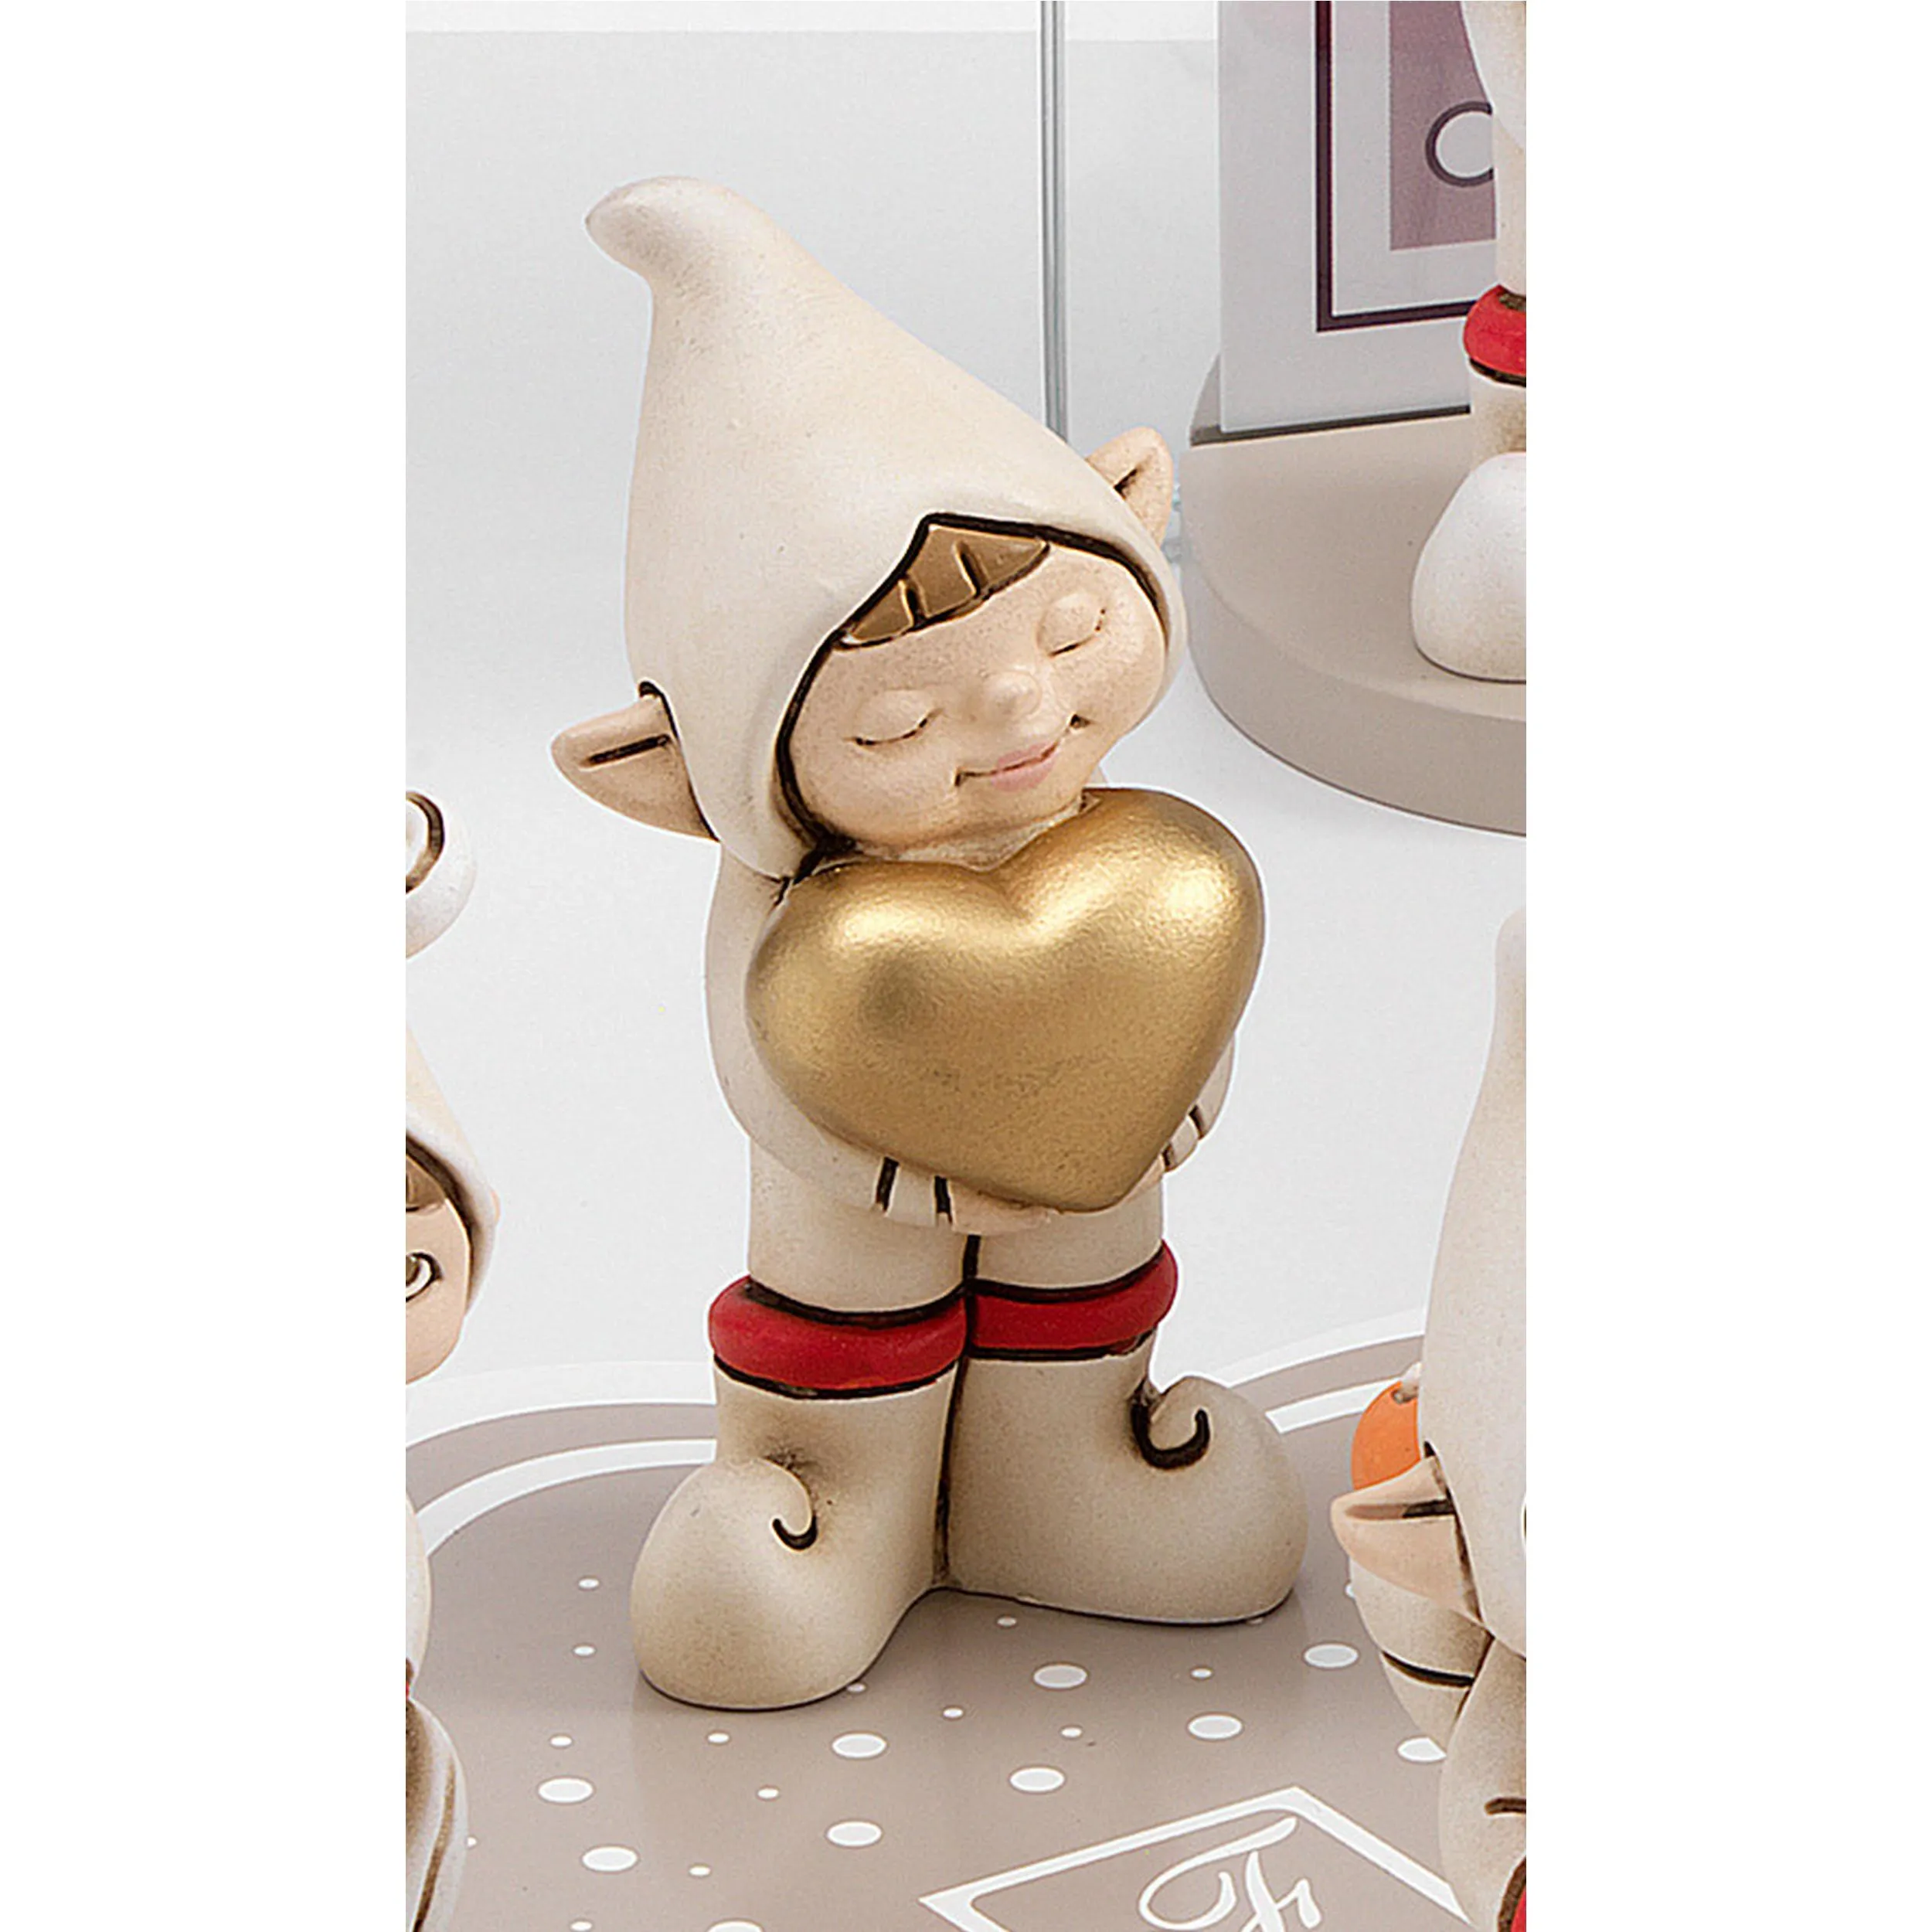 Folletto cuore in ceramica colorata h 9,3 cm in scatola regalo, bomboniera